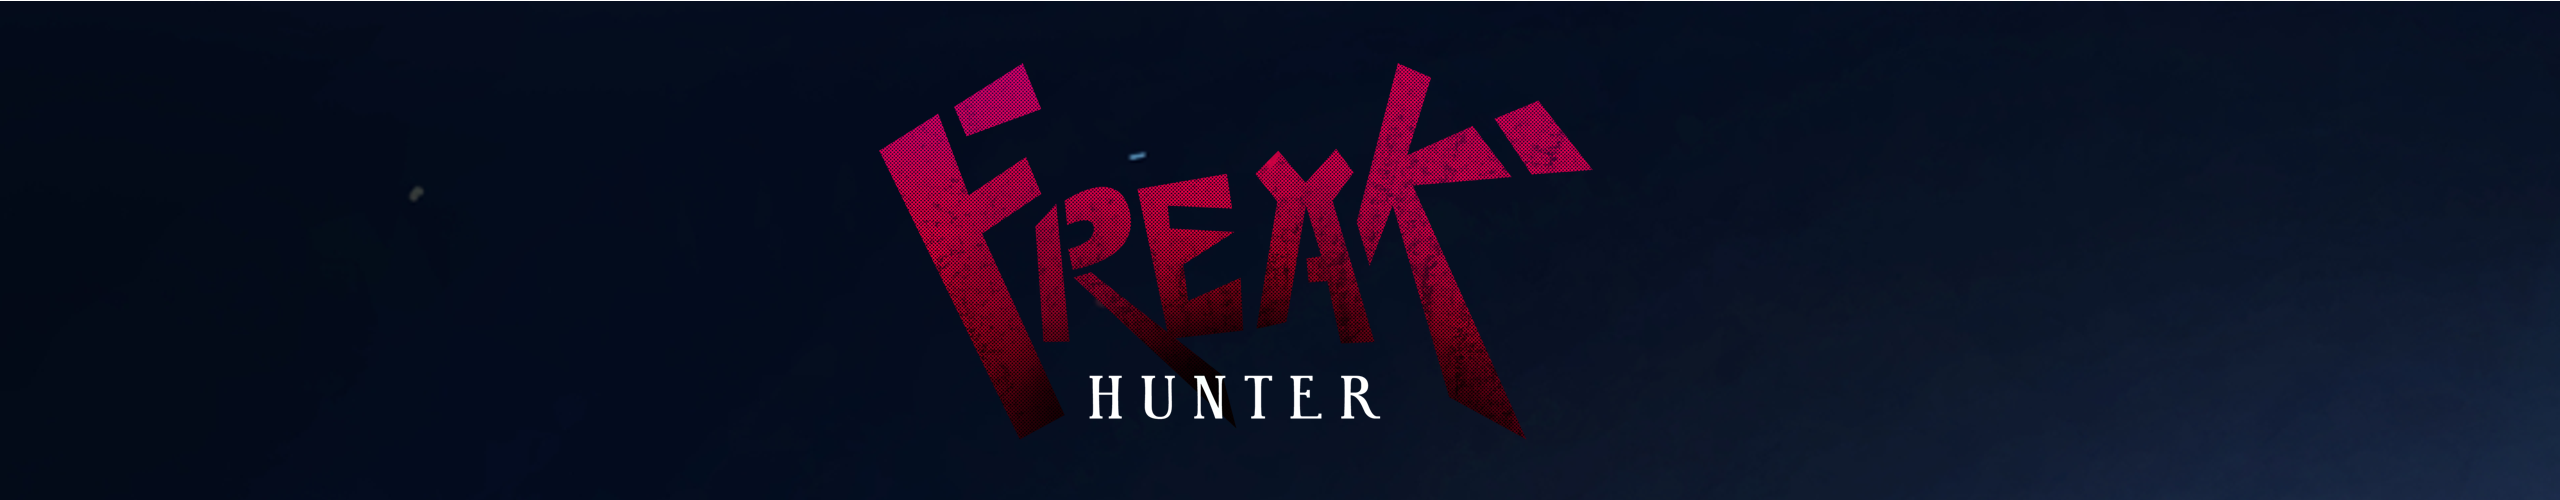 Freak Hunter - Welcome to Santa Esperança